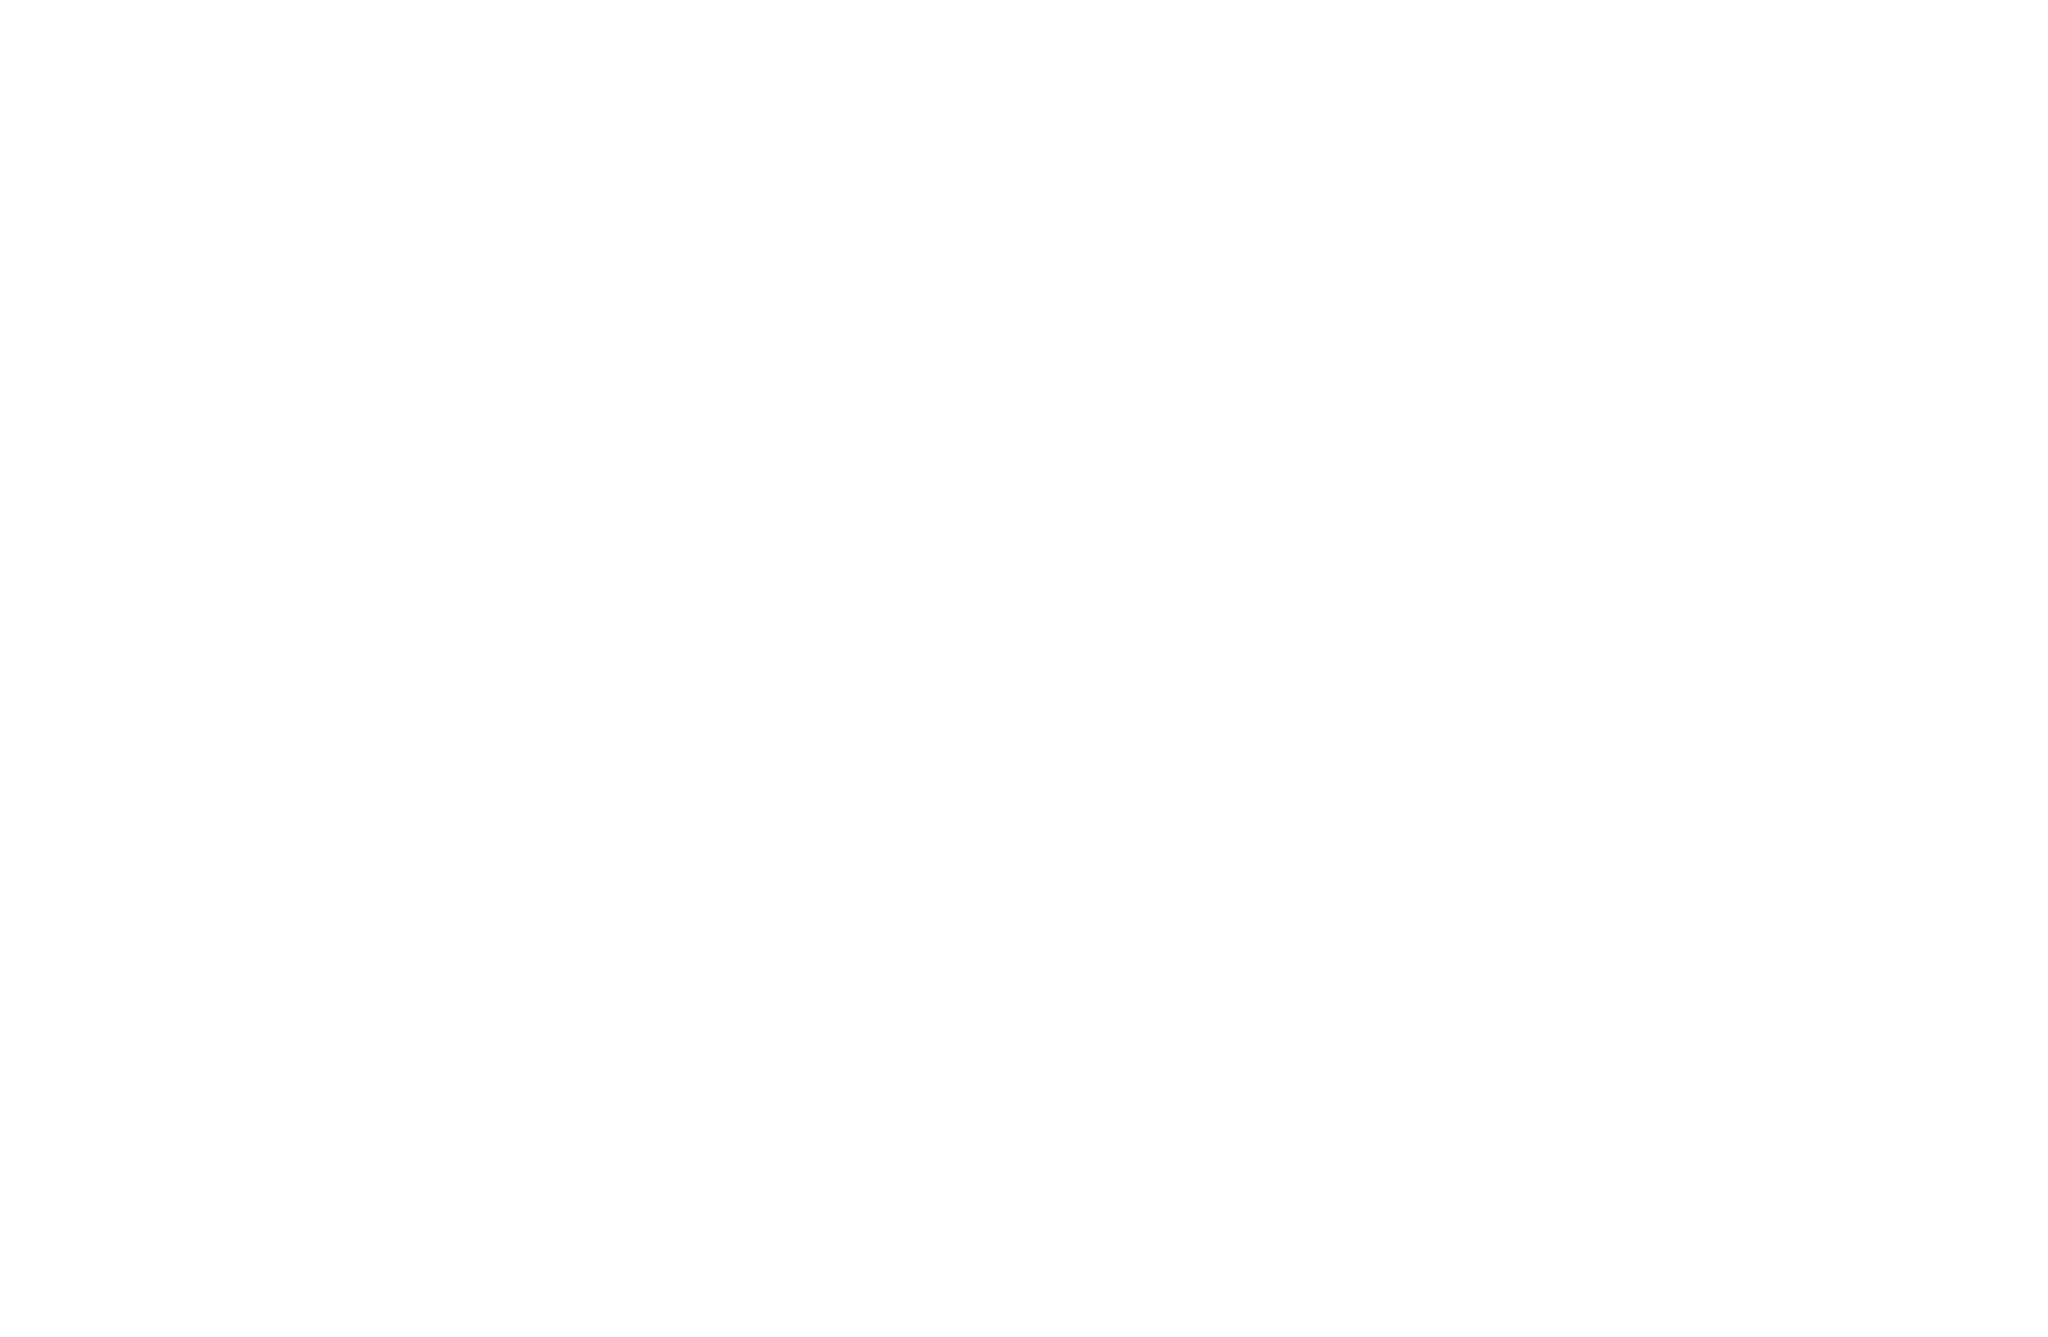 Sii logo white